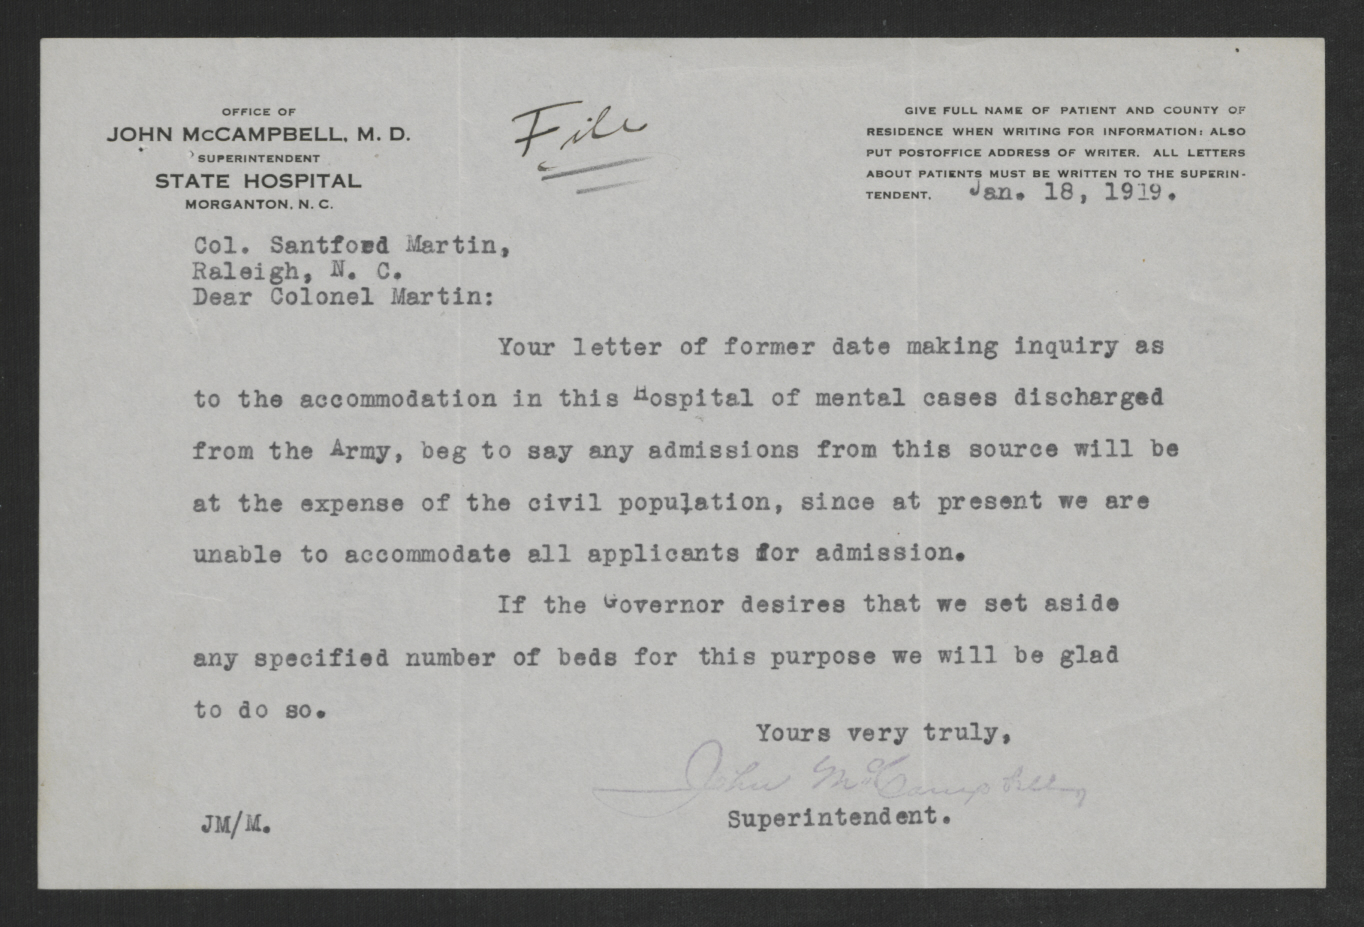 Letter from John J. McCampbell to Santford Martin, January 18, 1919